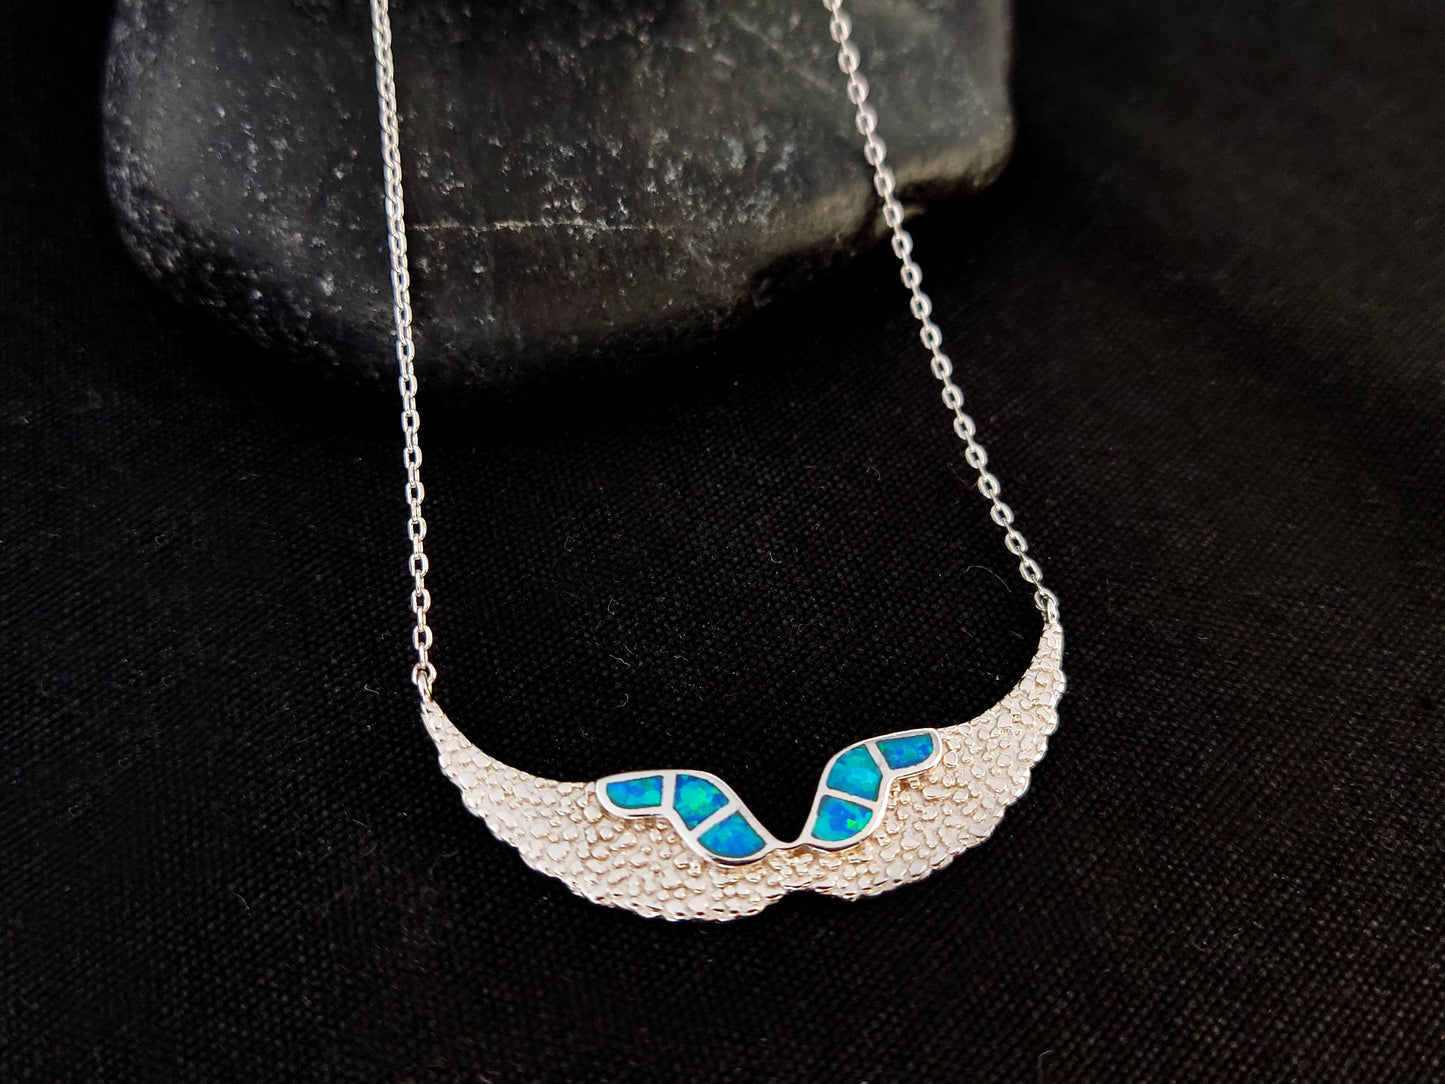 Sterling Silber 925 Fire Rainbow Blue Opal Angel Wings Chain Pendant Necklace, Griechischer Opal Kette, Bijoux Grecque, Greek Jewelry